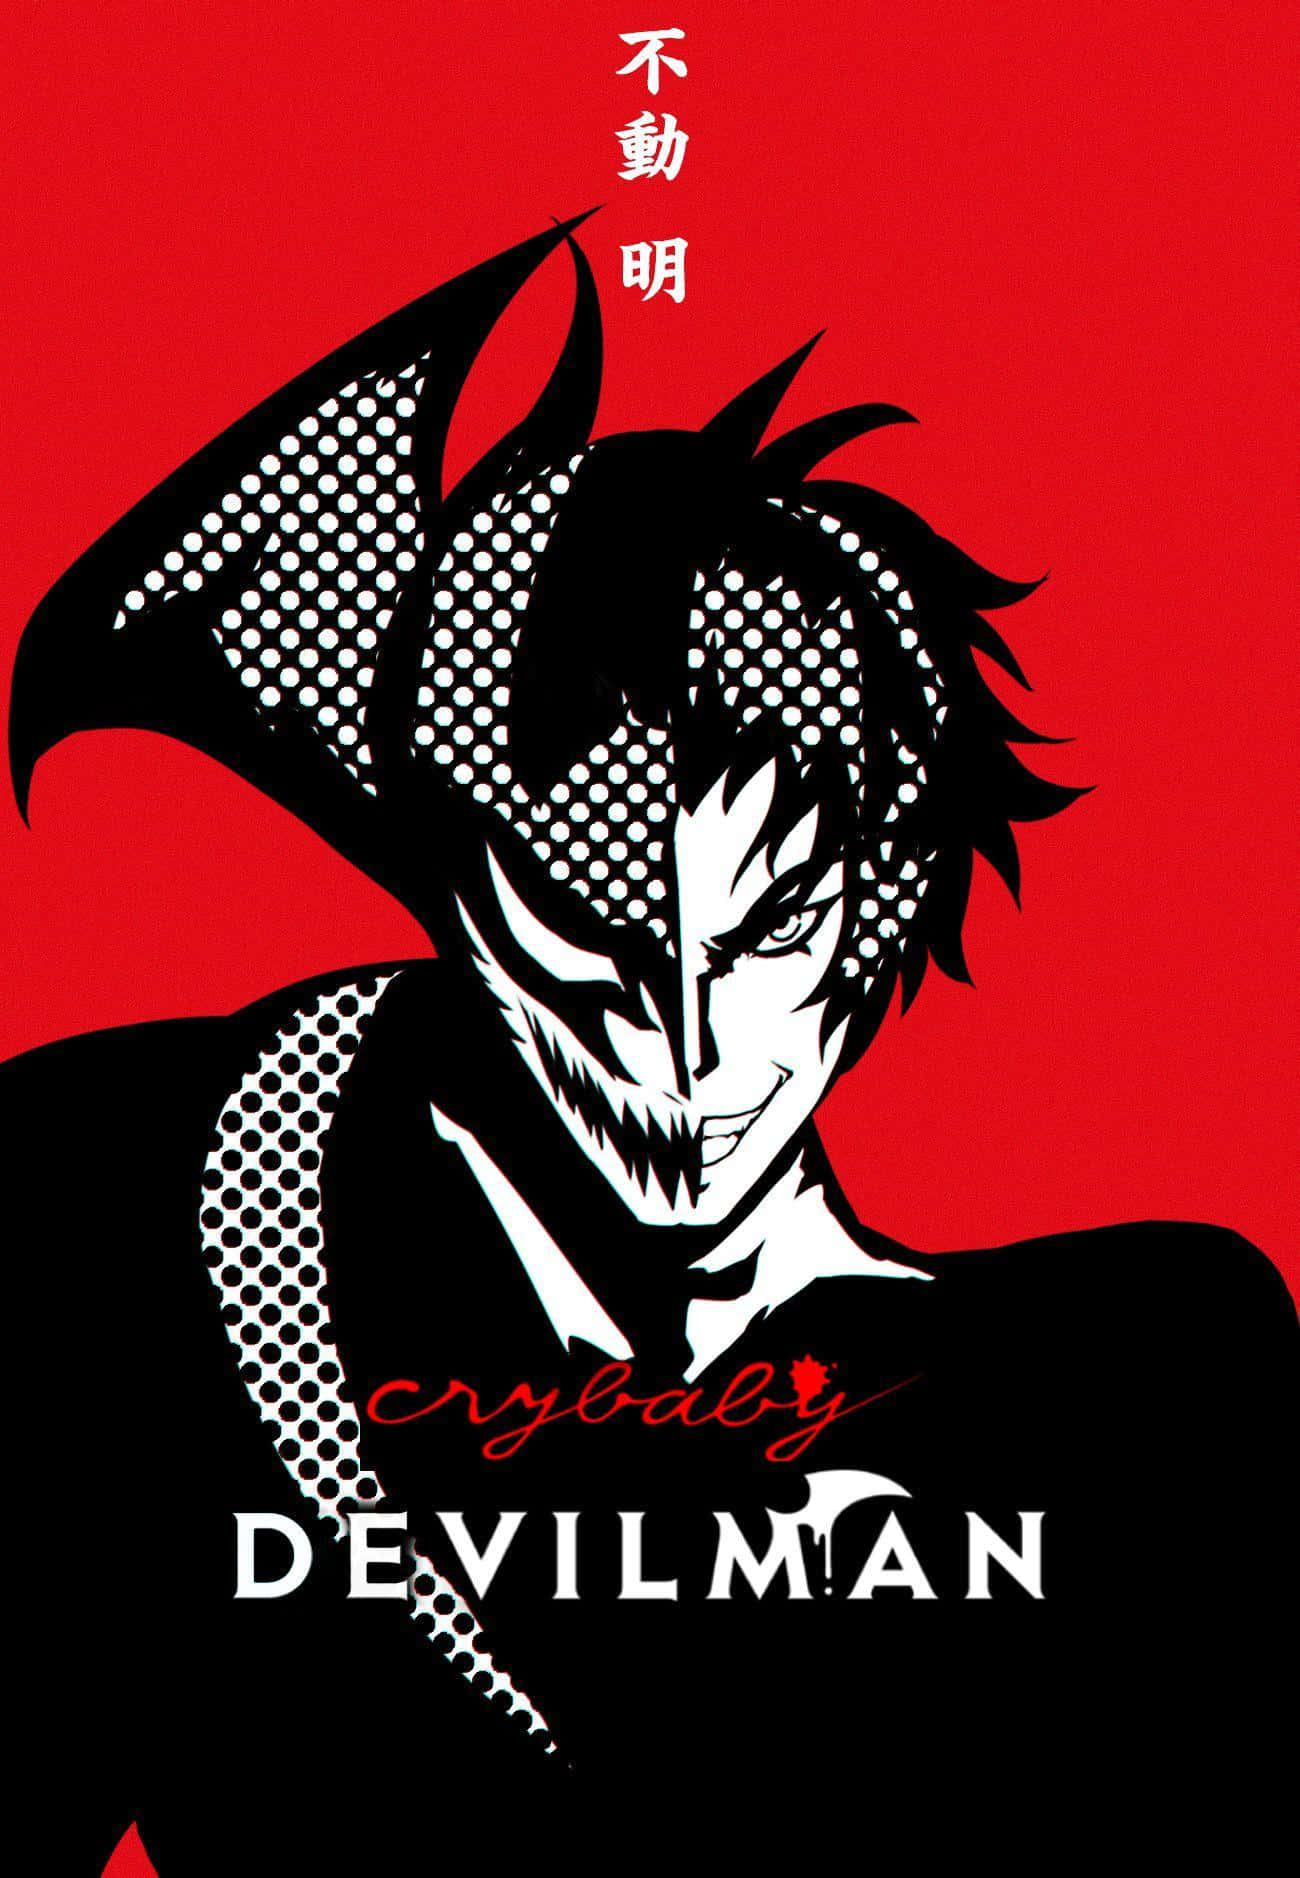 Demon transformation in Devilman Crybaby